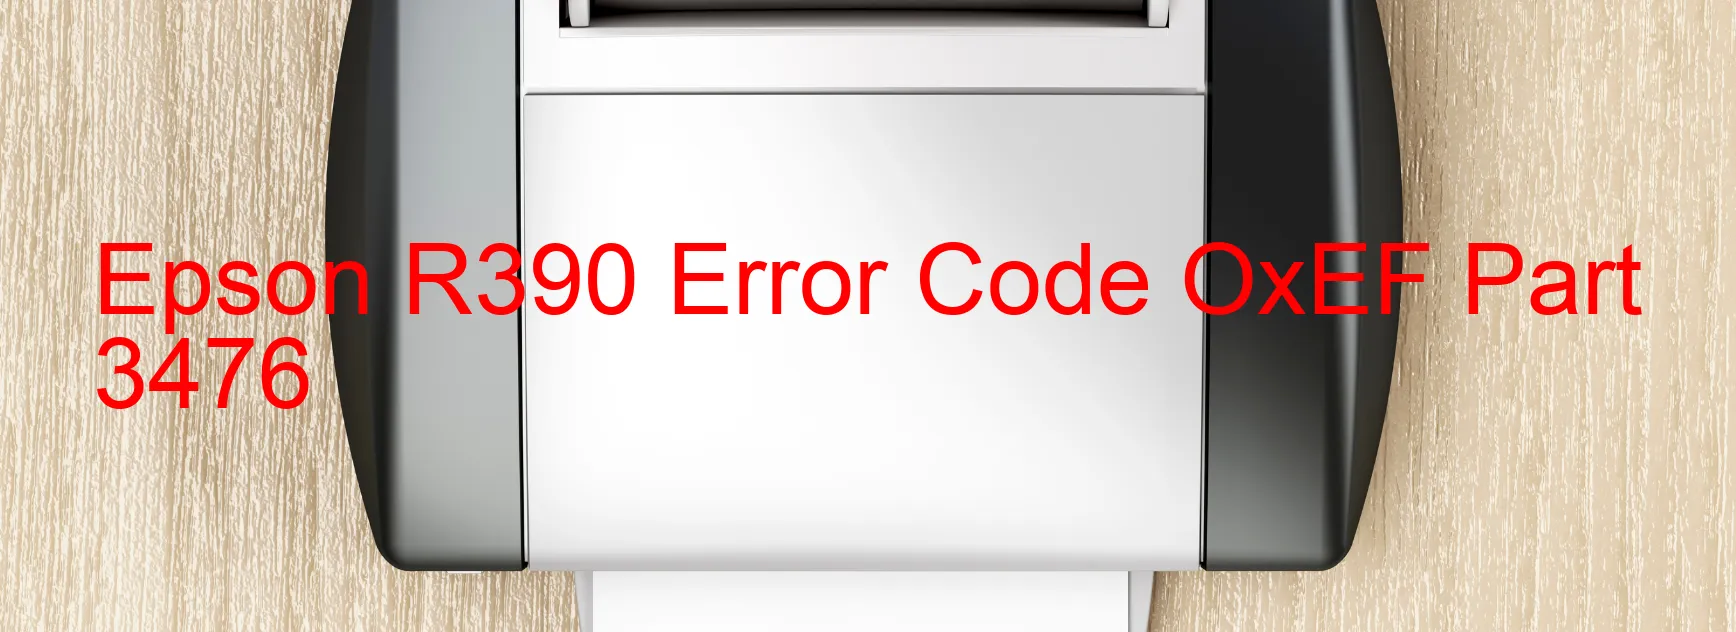 Epson R390 Error Code OxEF Part 3476